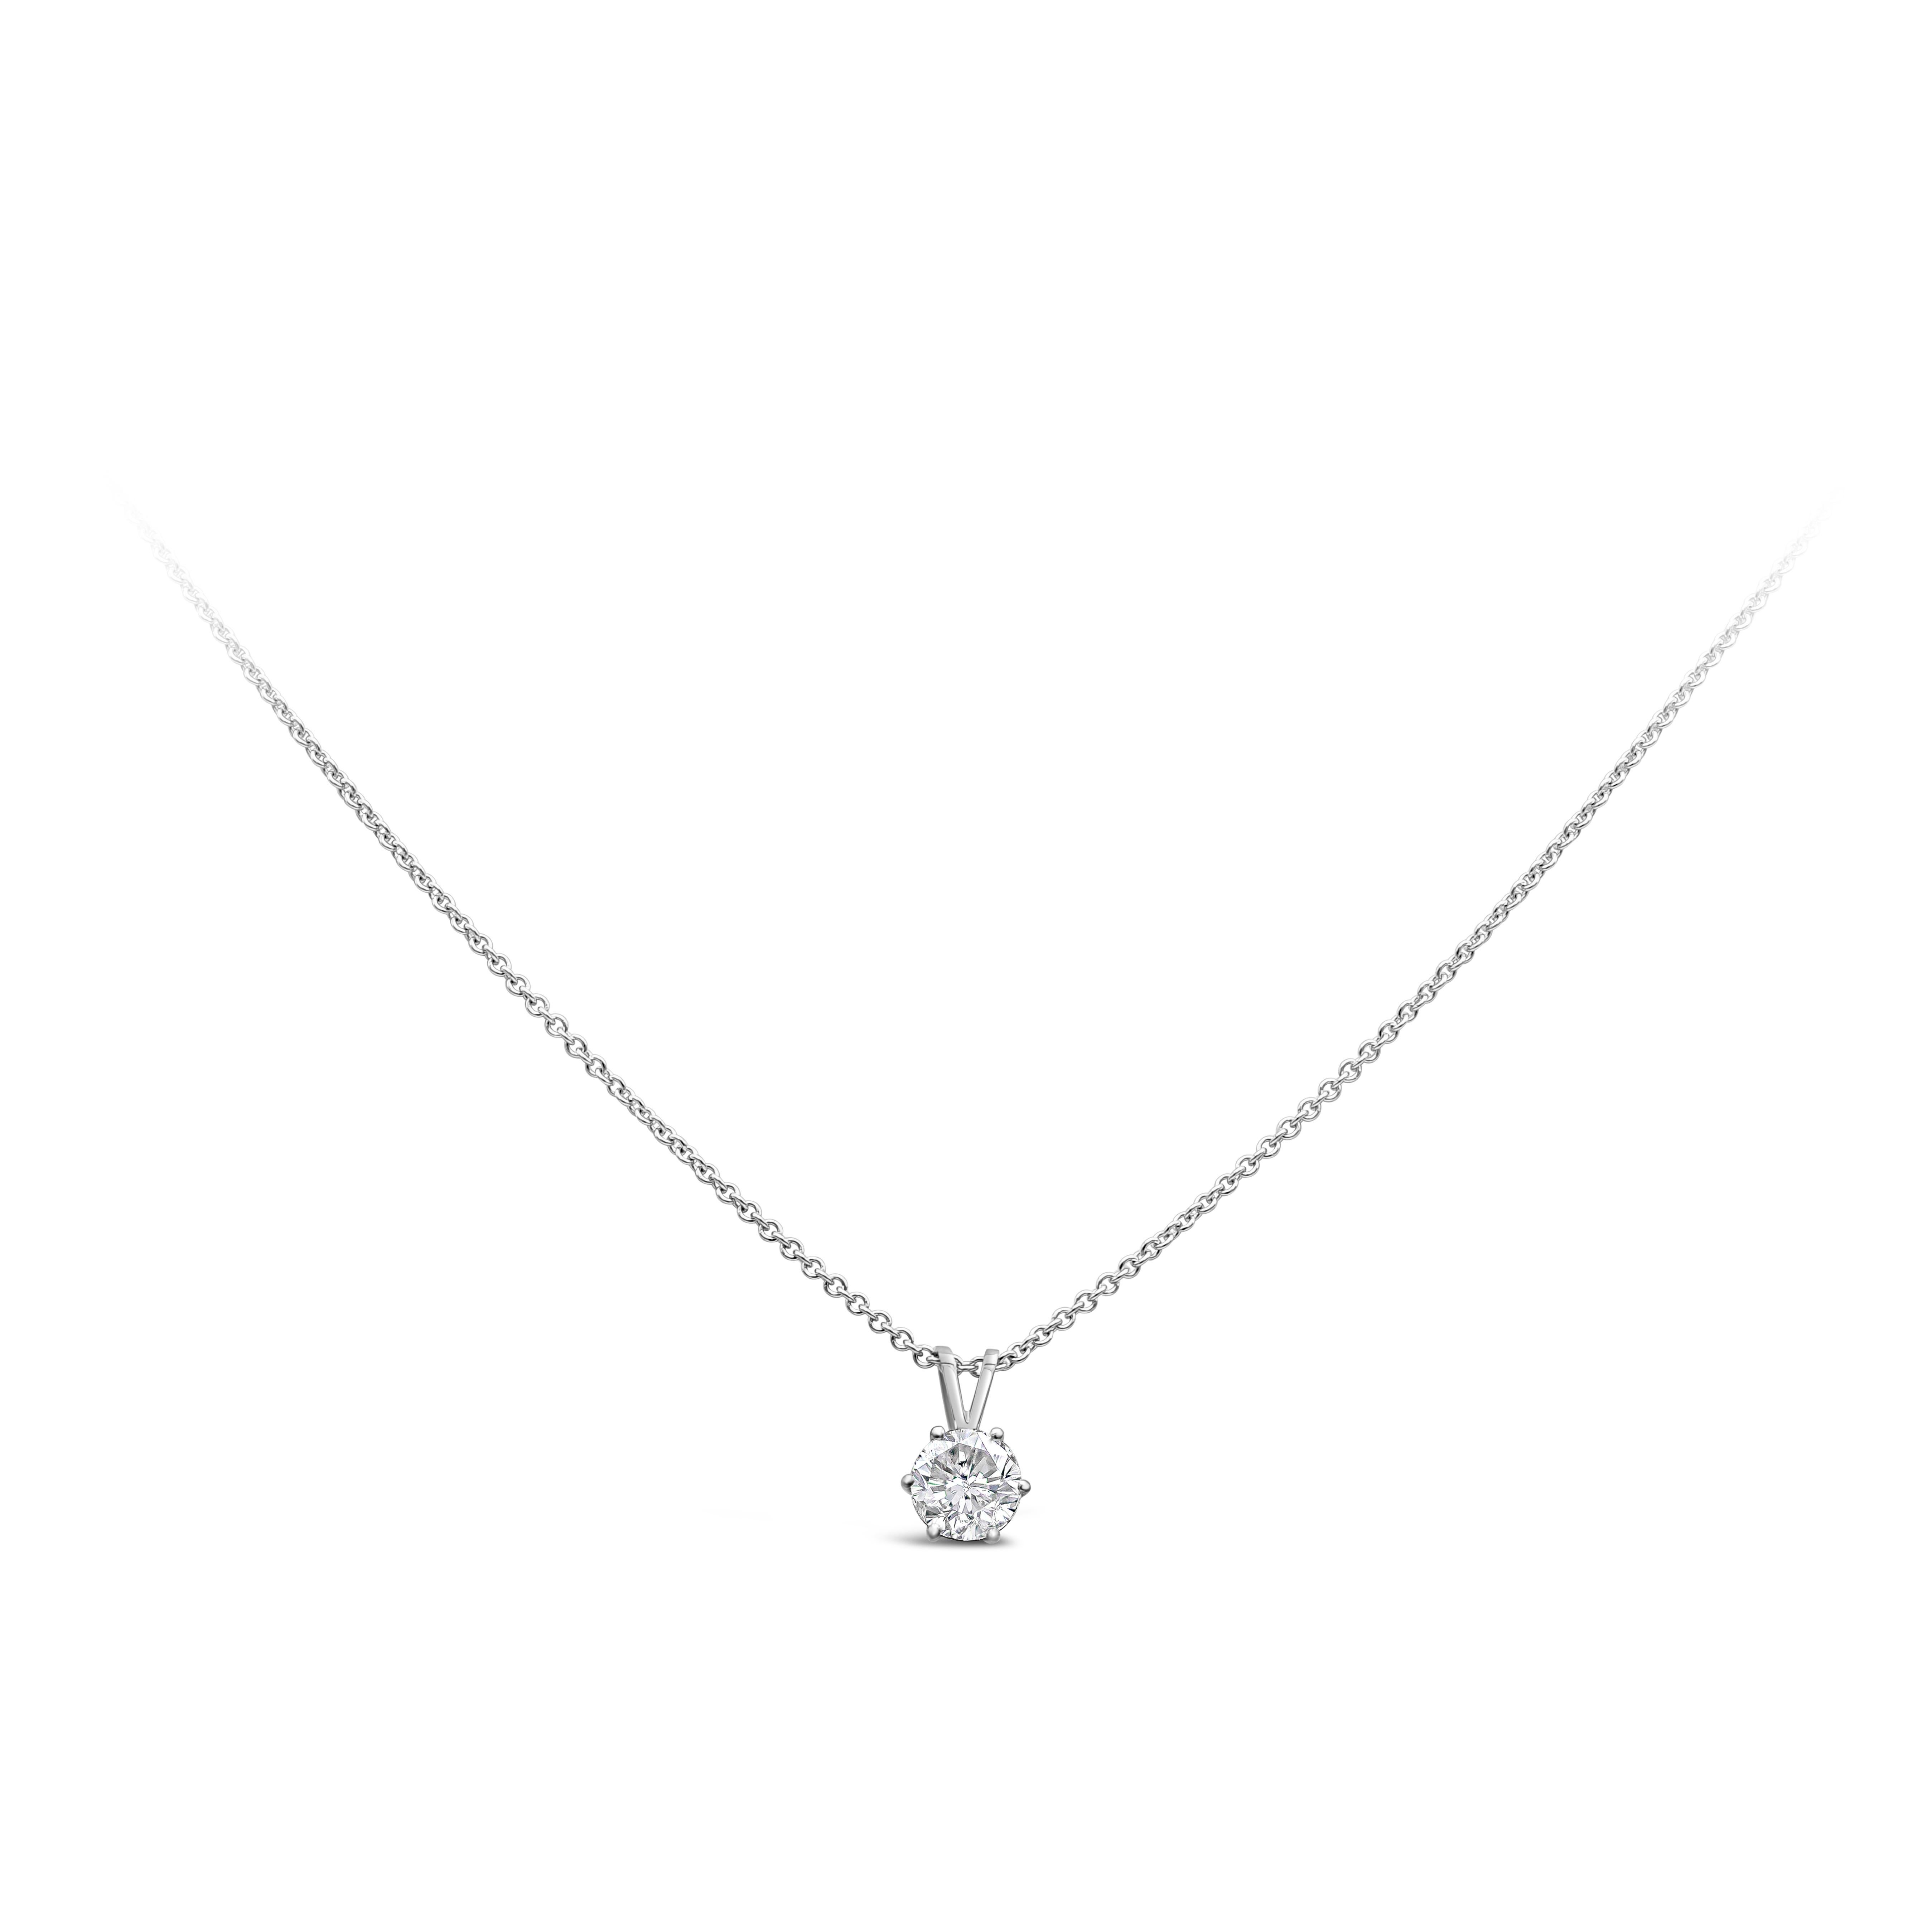 Ce collier pendentif simple et intemporel met en valeur un diamant brillant de taille ronde pesant 1,05 carats, de couleur F et de pureté SI3. Monté dans une belle monture à six griffes. Réalisé en or blanc 14 carats et 18 carats. 

Roman Malakov